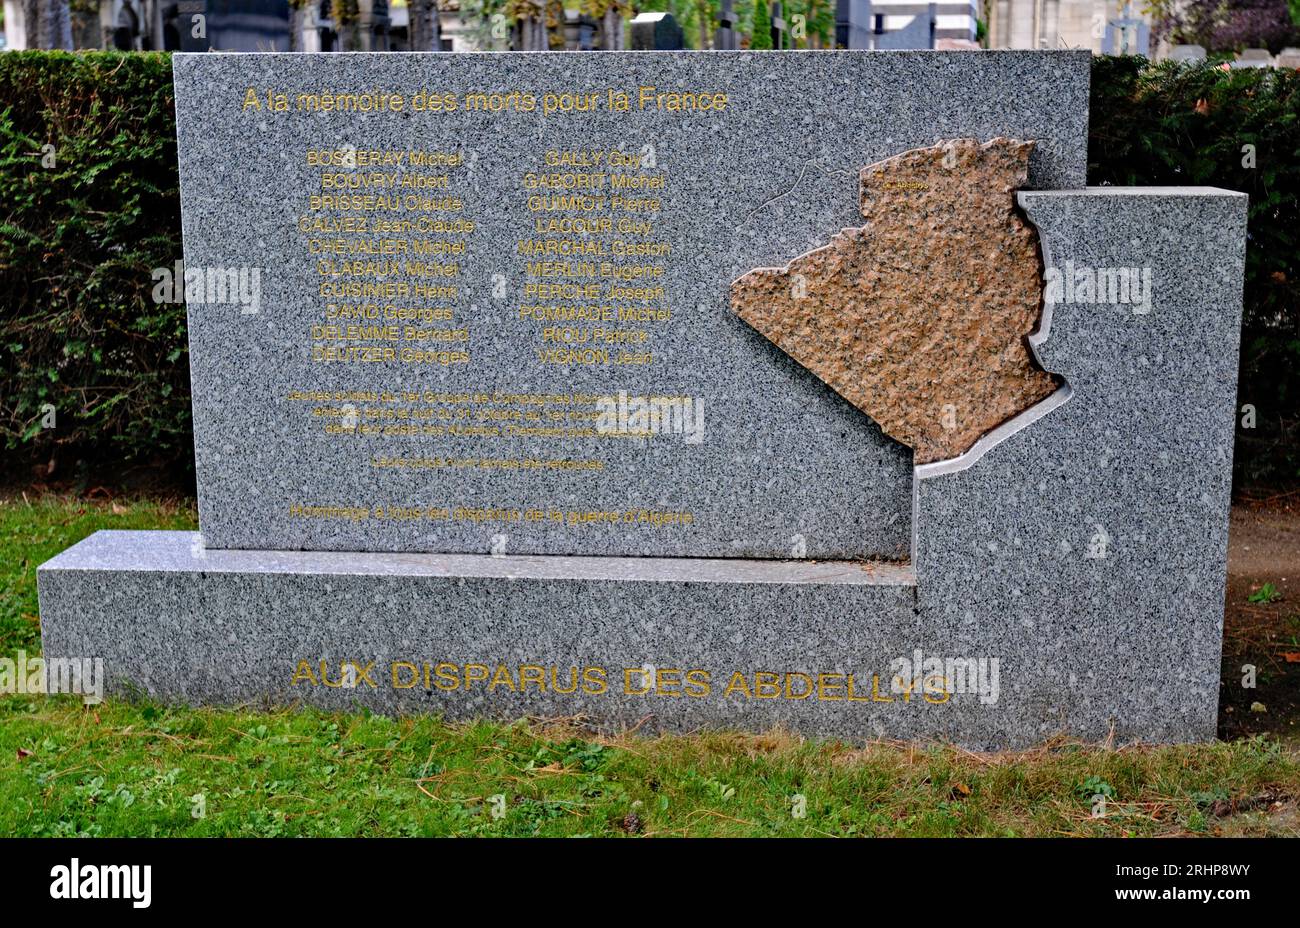 Un monumento ai 20 soldati francesi scomparsi nei pressi di Abdellys, in Algeria, nel 1956 durante la guerra d'Algeria, si trova nel cimitero di Père Lachaise a Parigi. Foto Stock